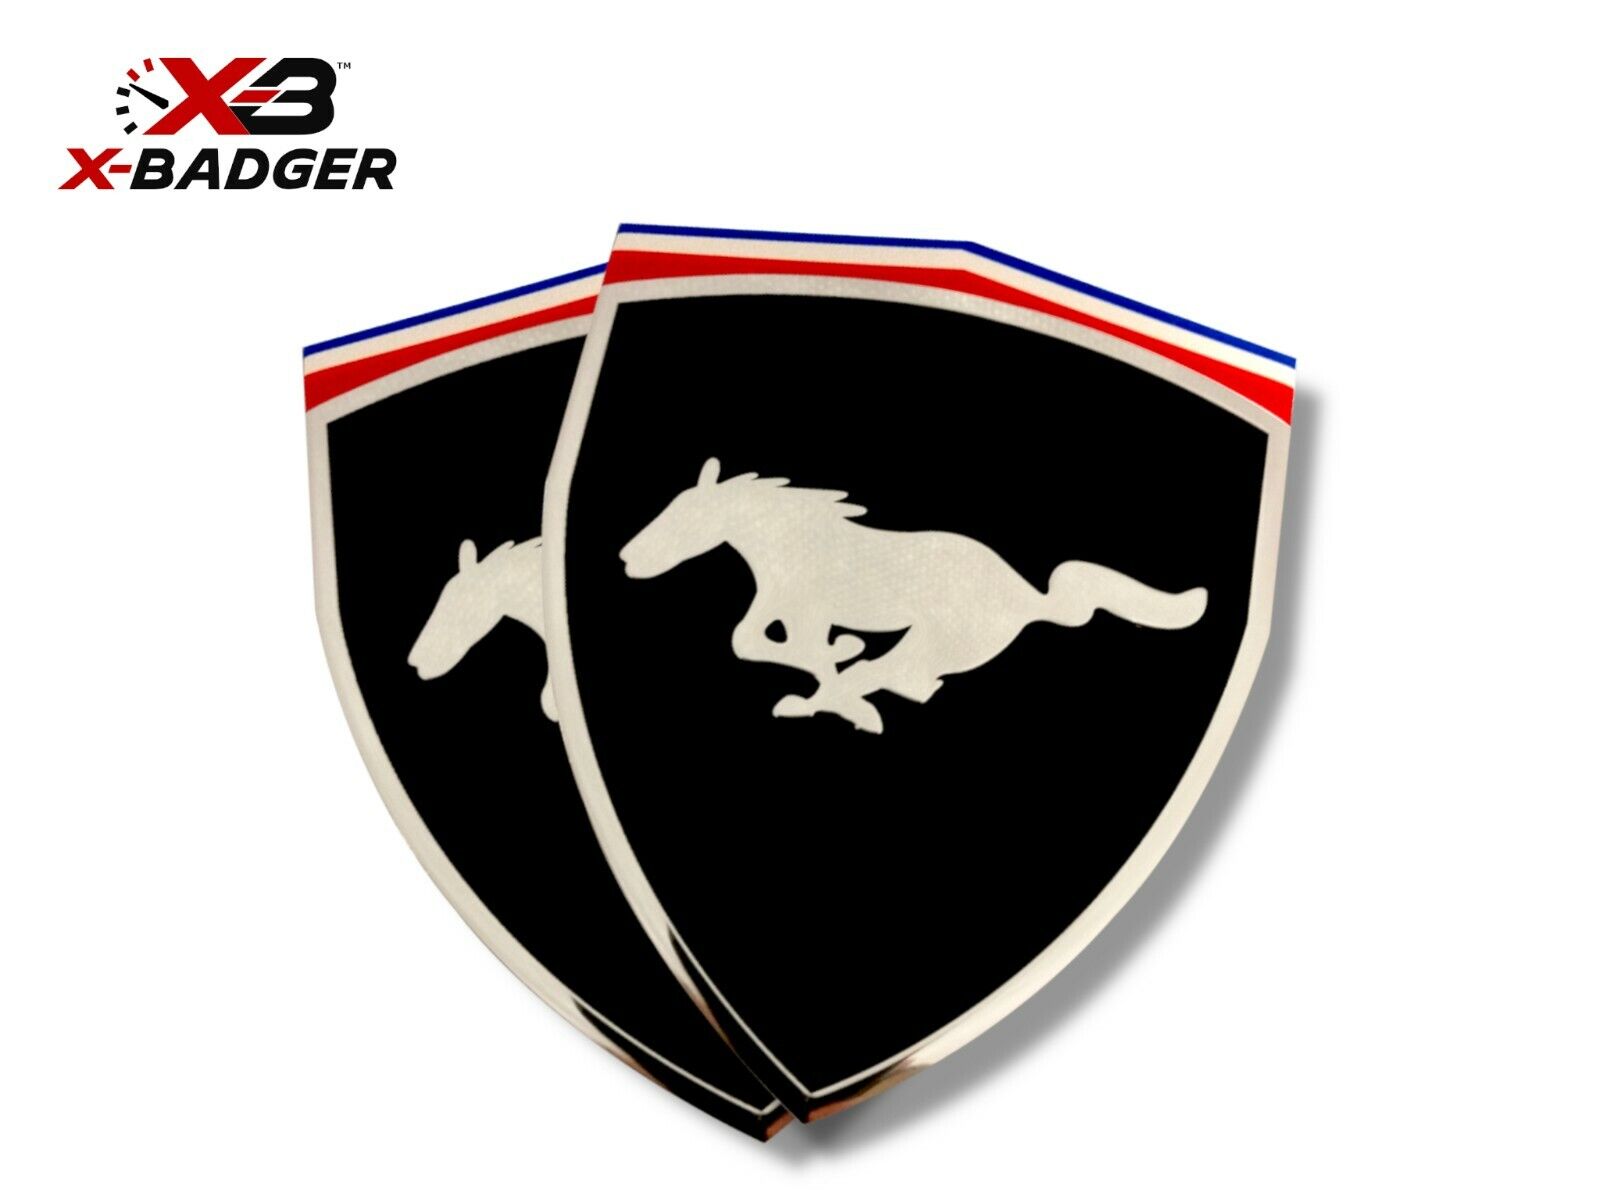 Mustang - Coyote GT 5.0 Ferrari Style Badge Emblem - Pair - Black - X-Badger